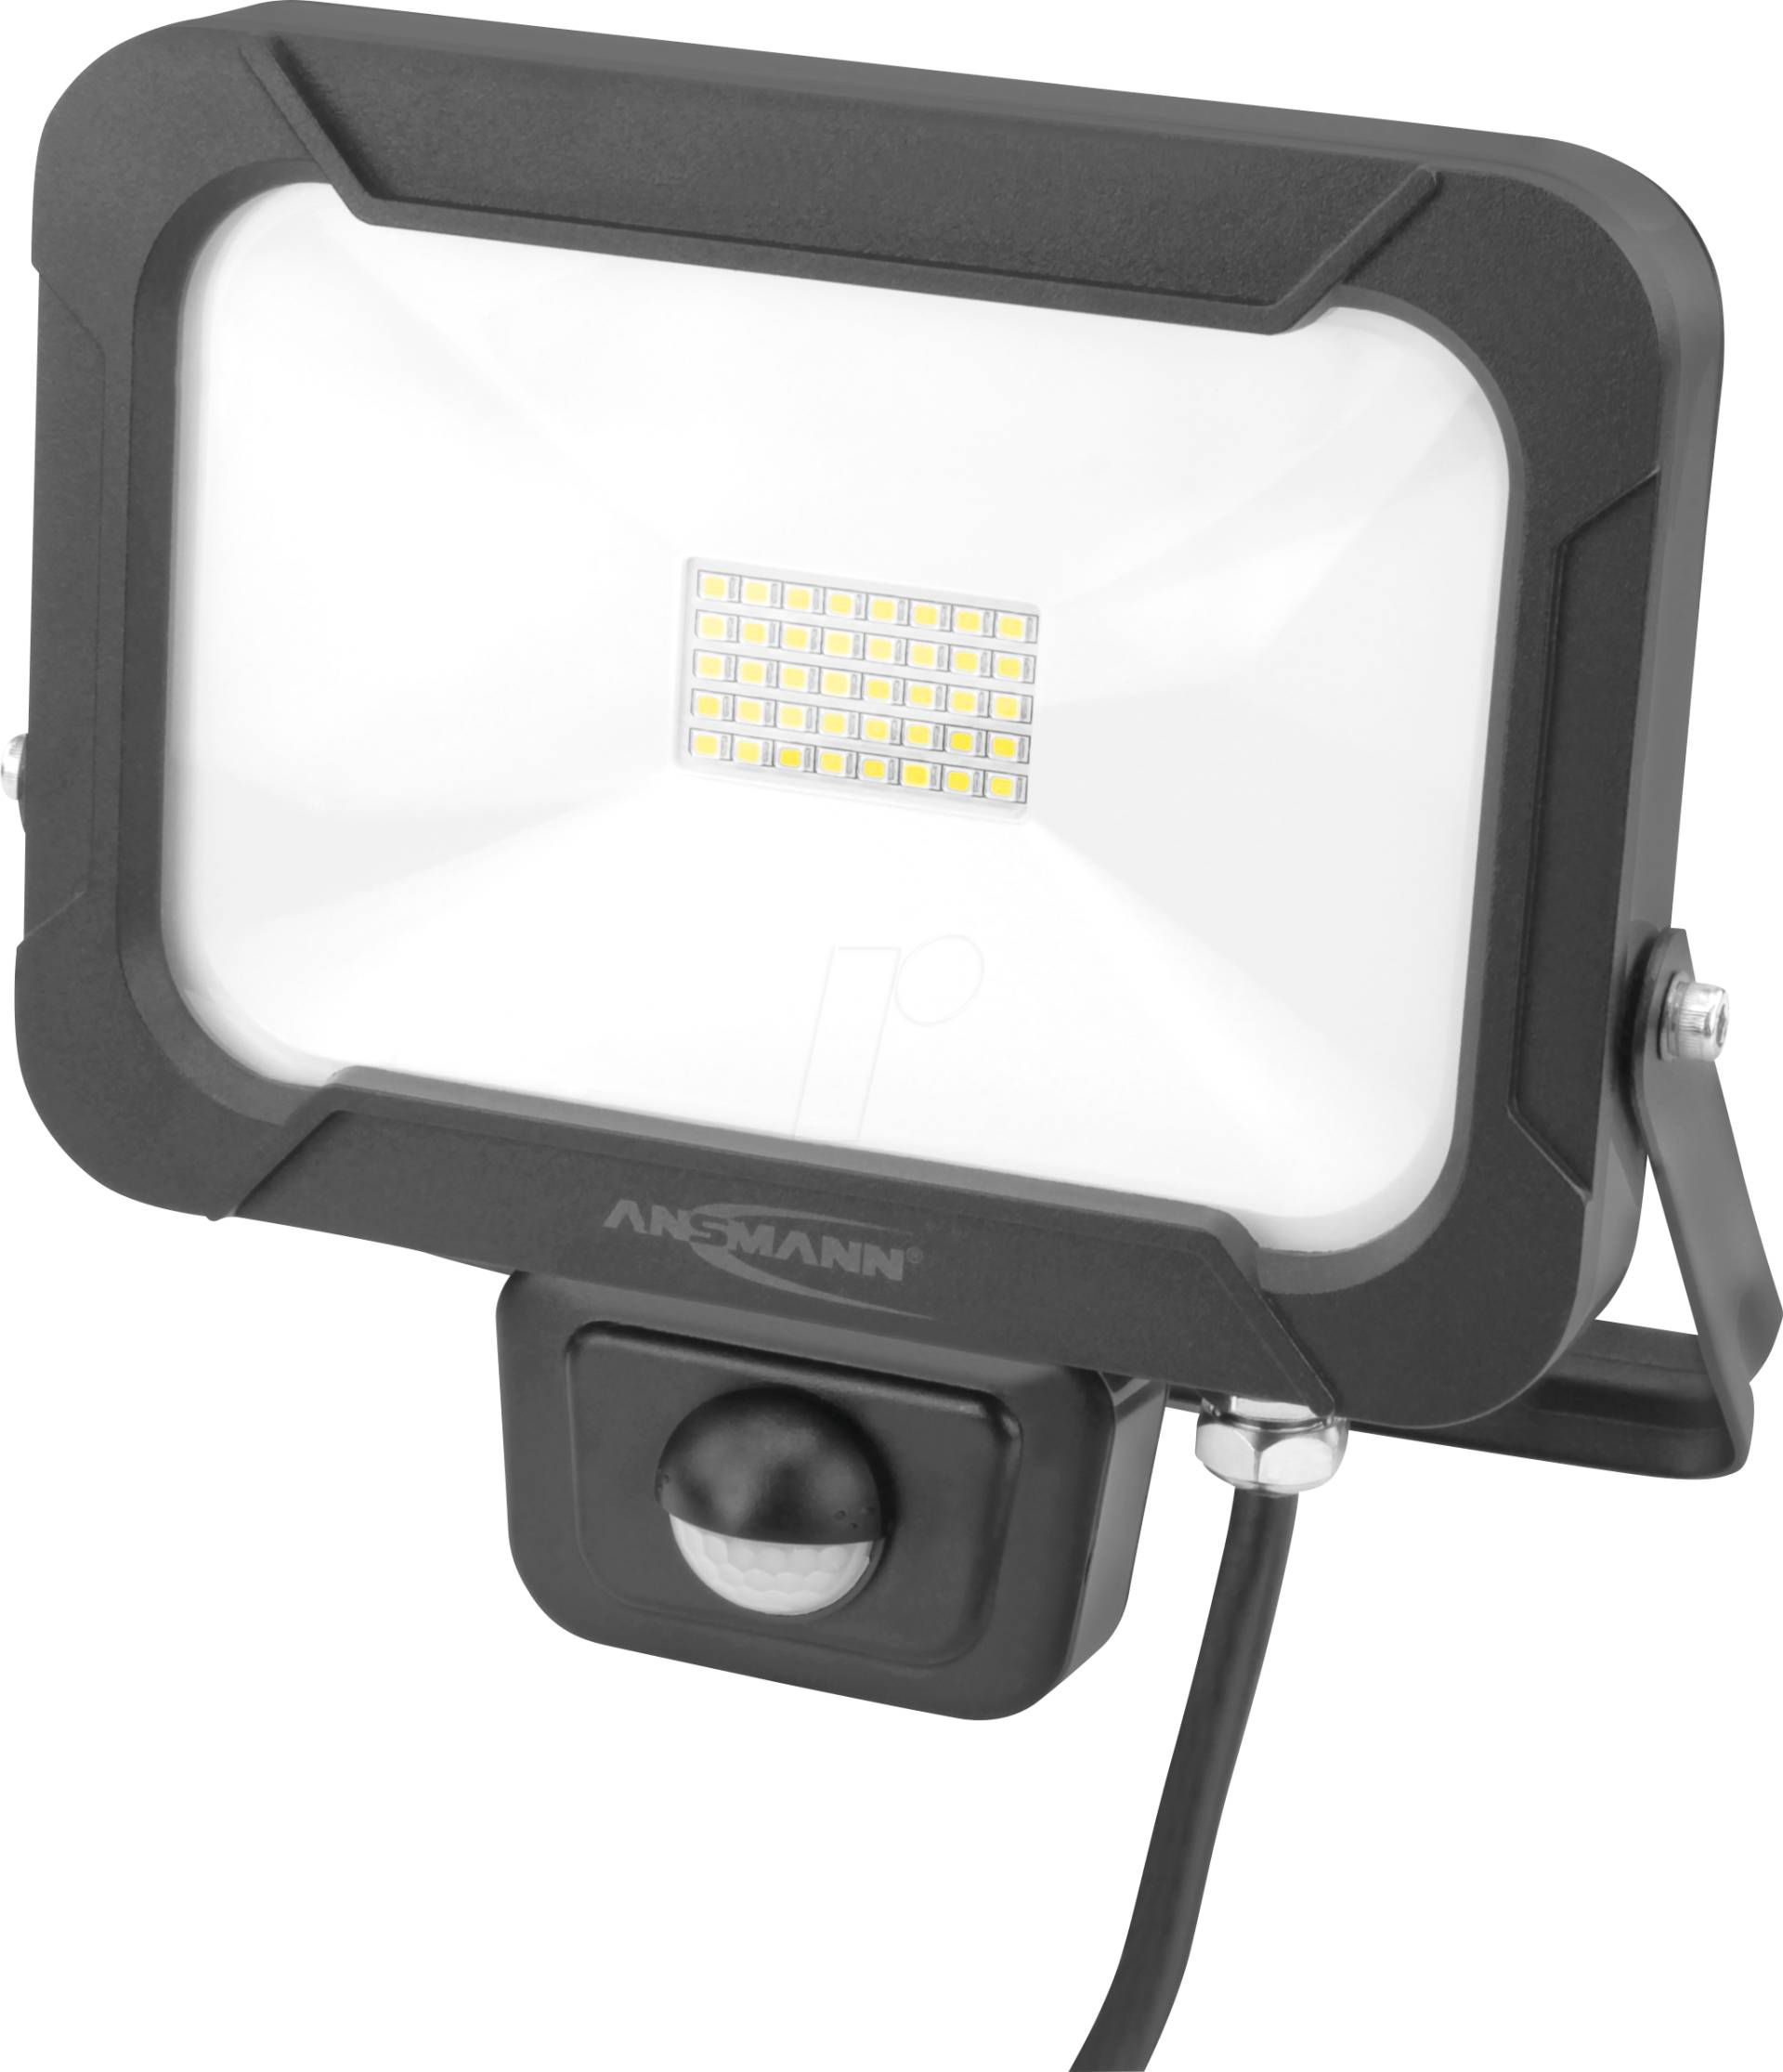 ANS 1600-0284 - LED-Flutlicht, 20 W, 1600 lm, 5000 K, schwarz, IP54, Sensor von Ansmann